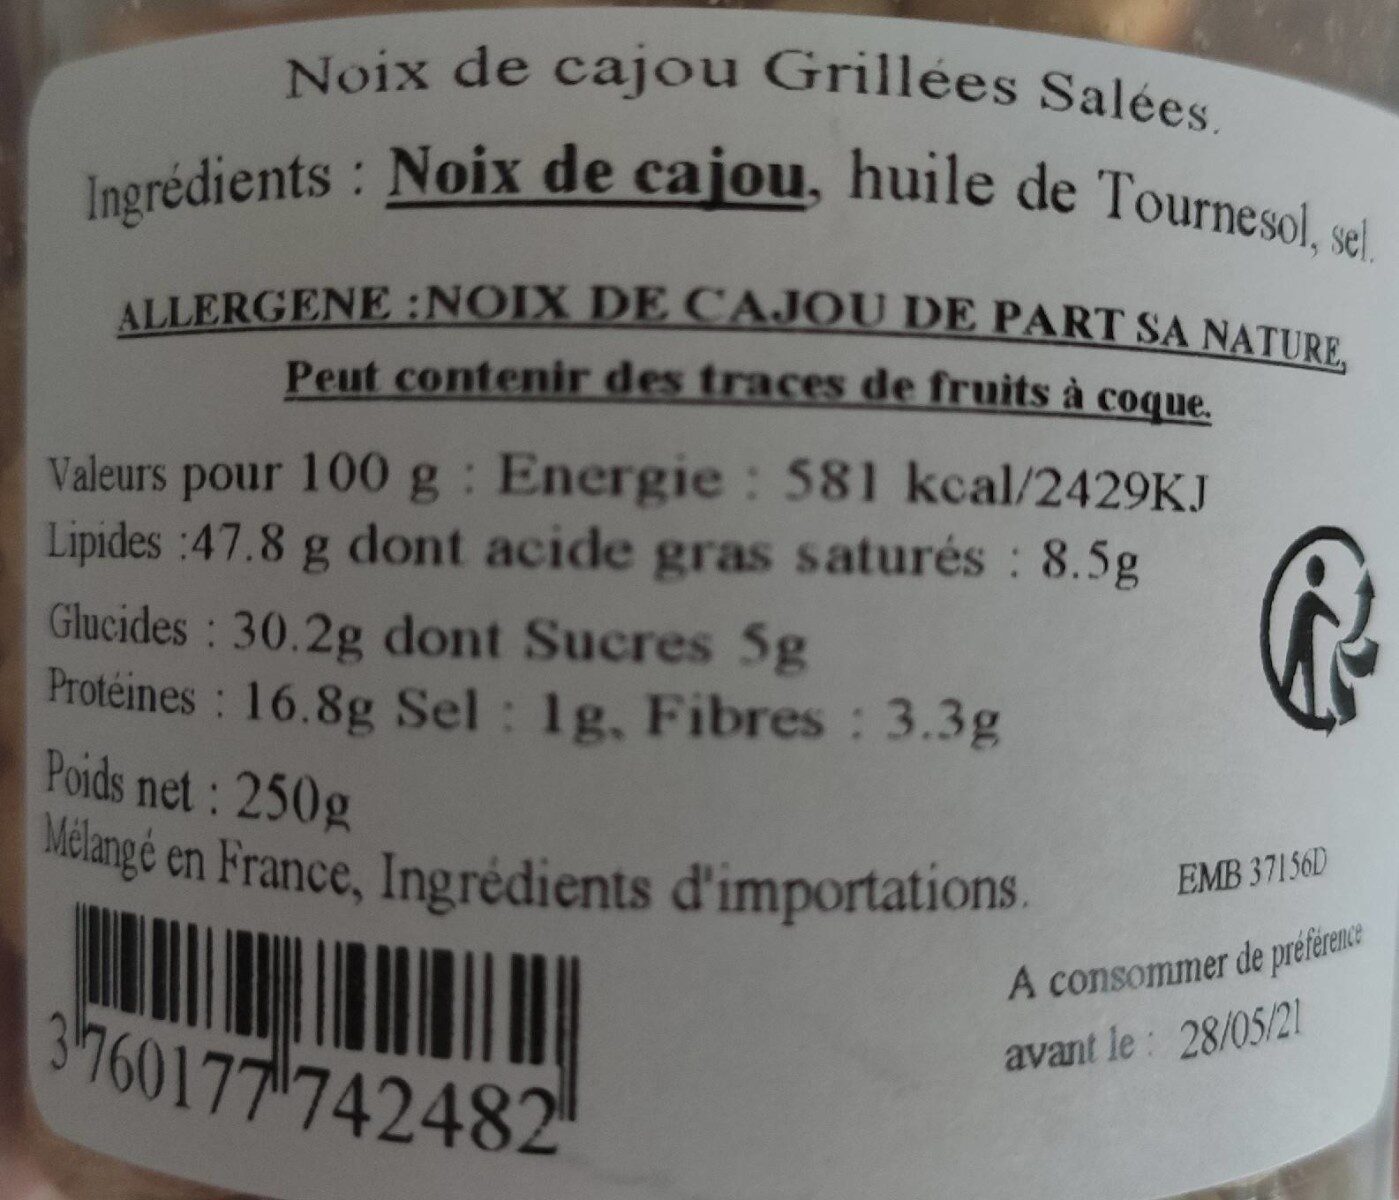 Noix de cajou grillée salé - Nutrition facts - fr